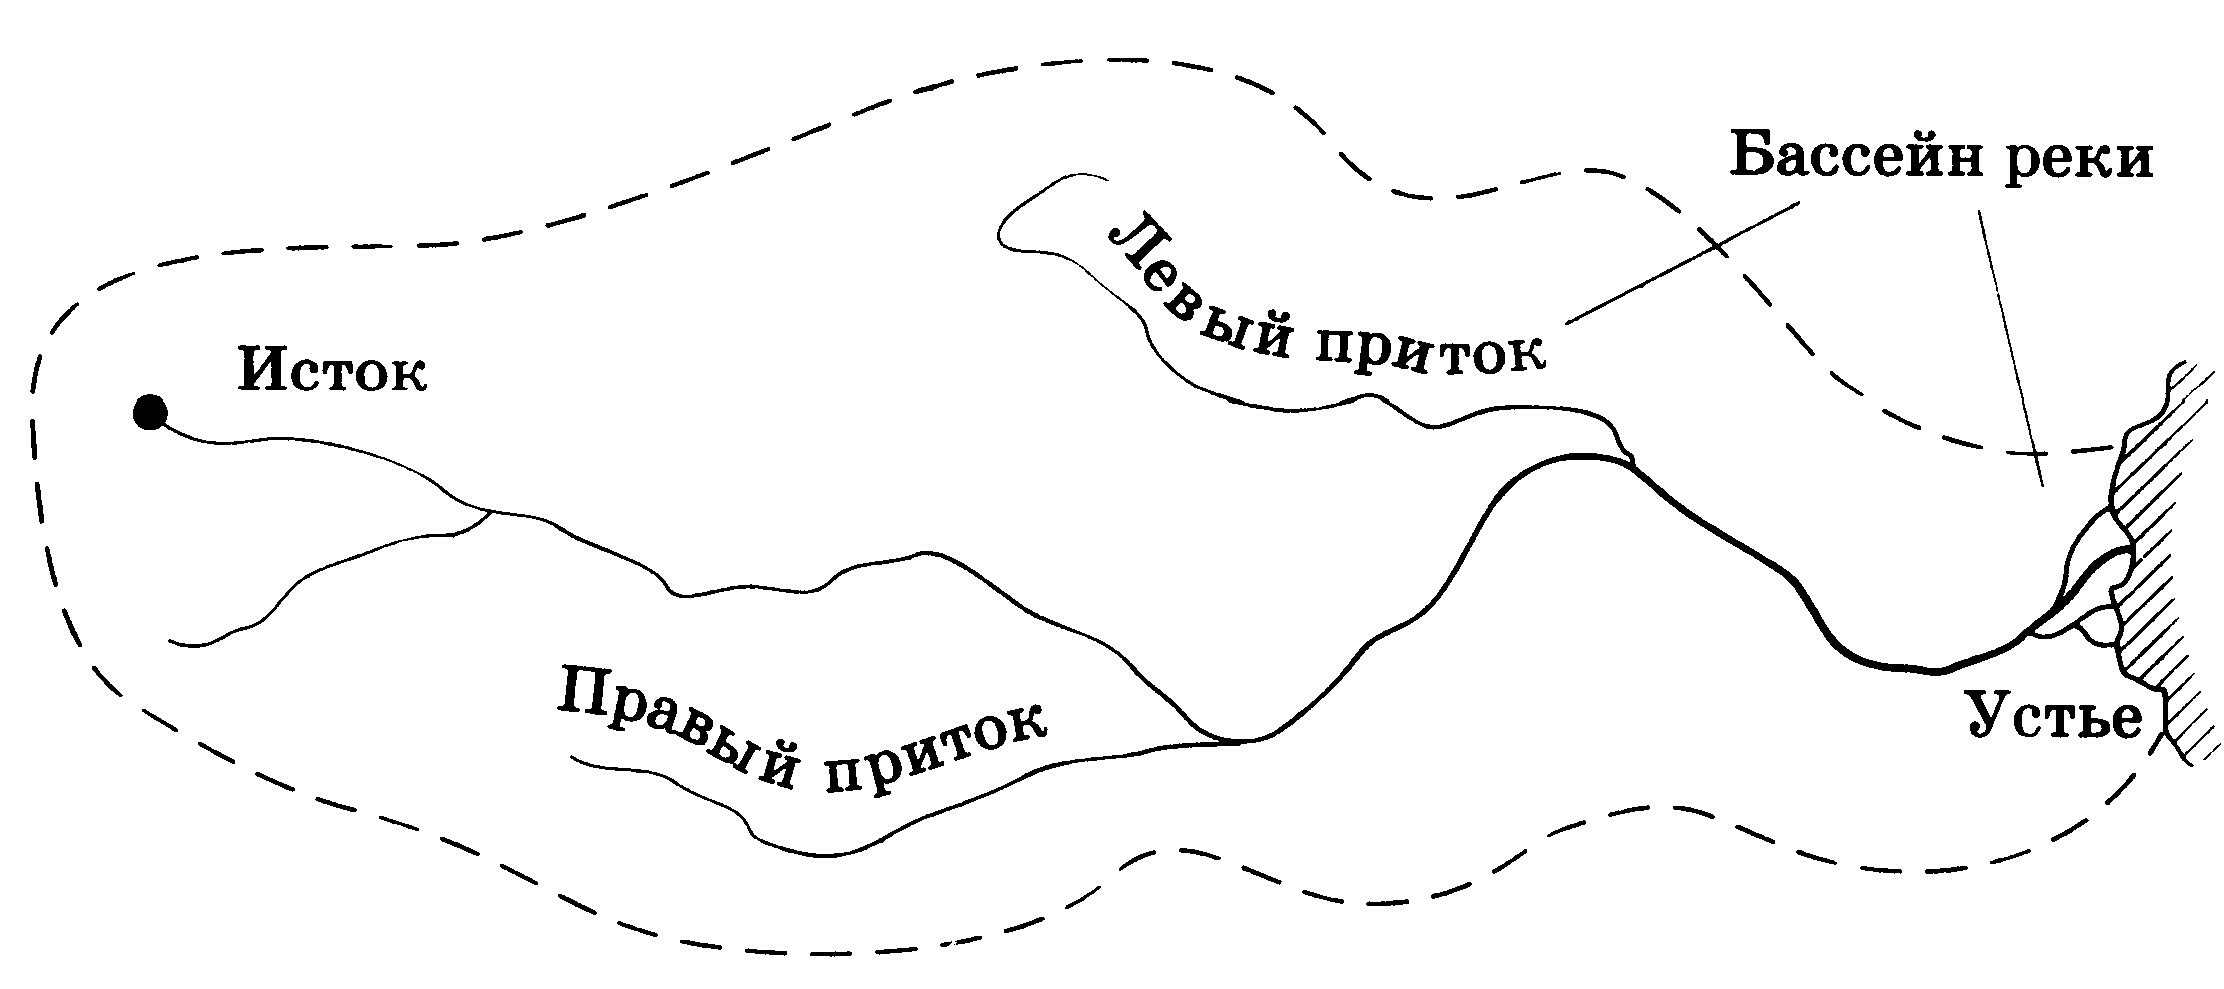 Исток Устье бассейн реки на схеме